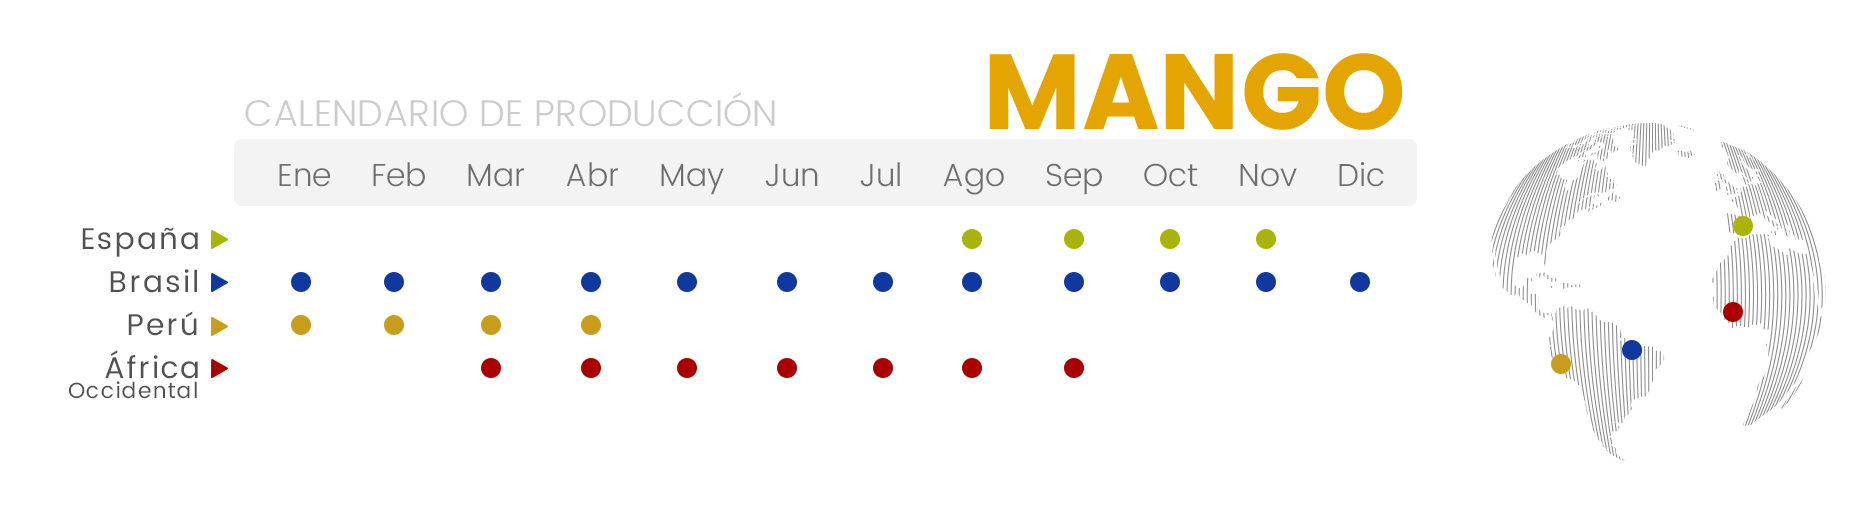 Calendario de producción | Mango NatureTasty